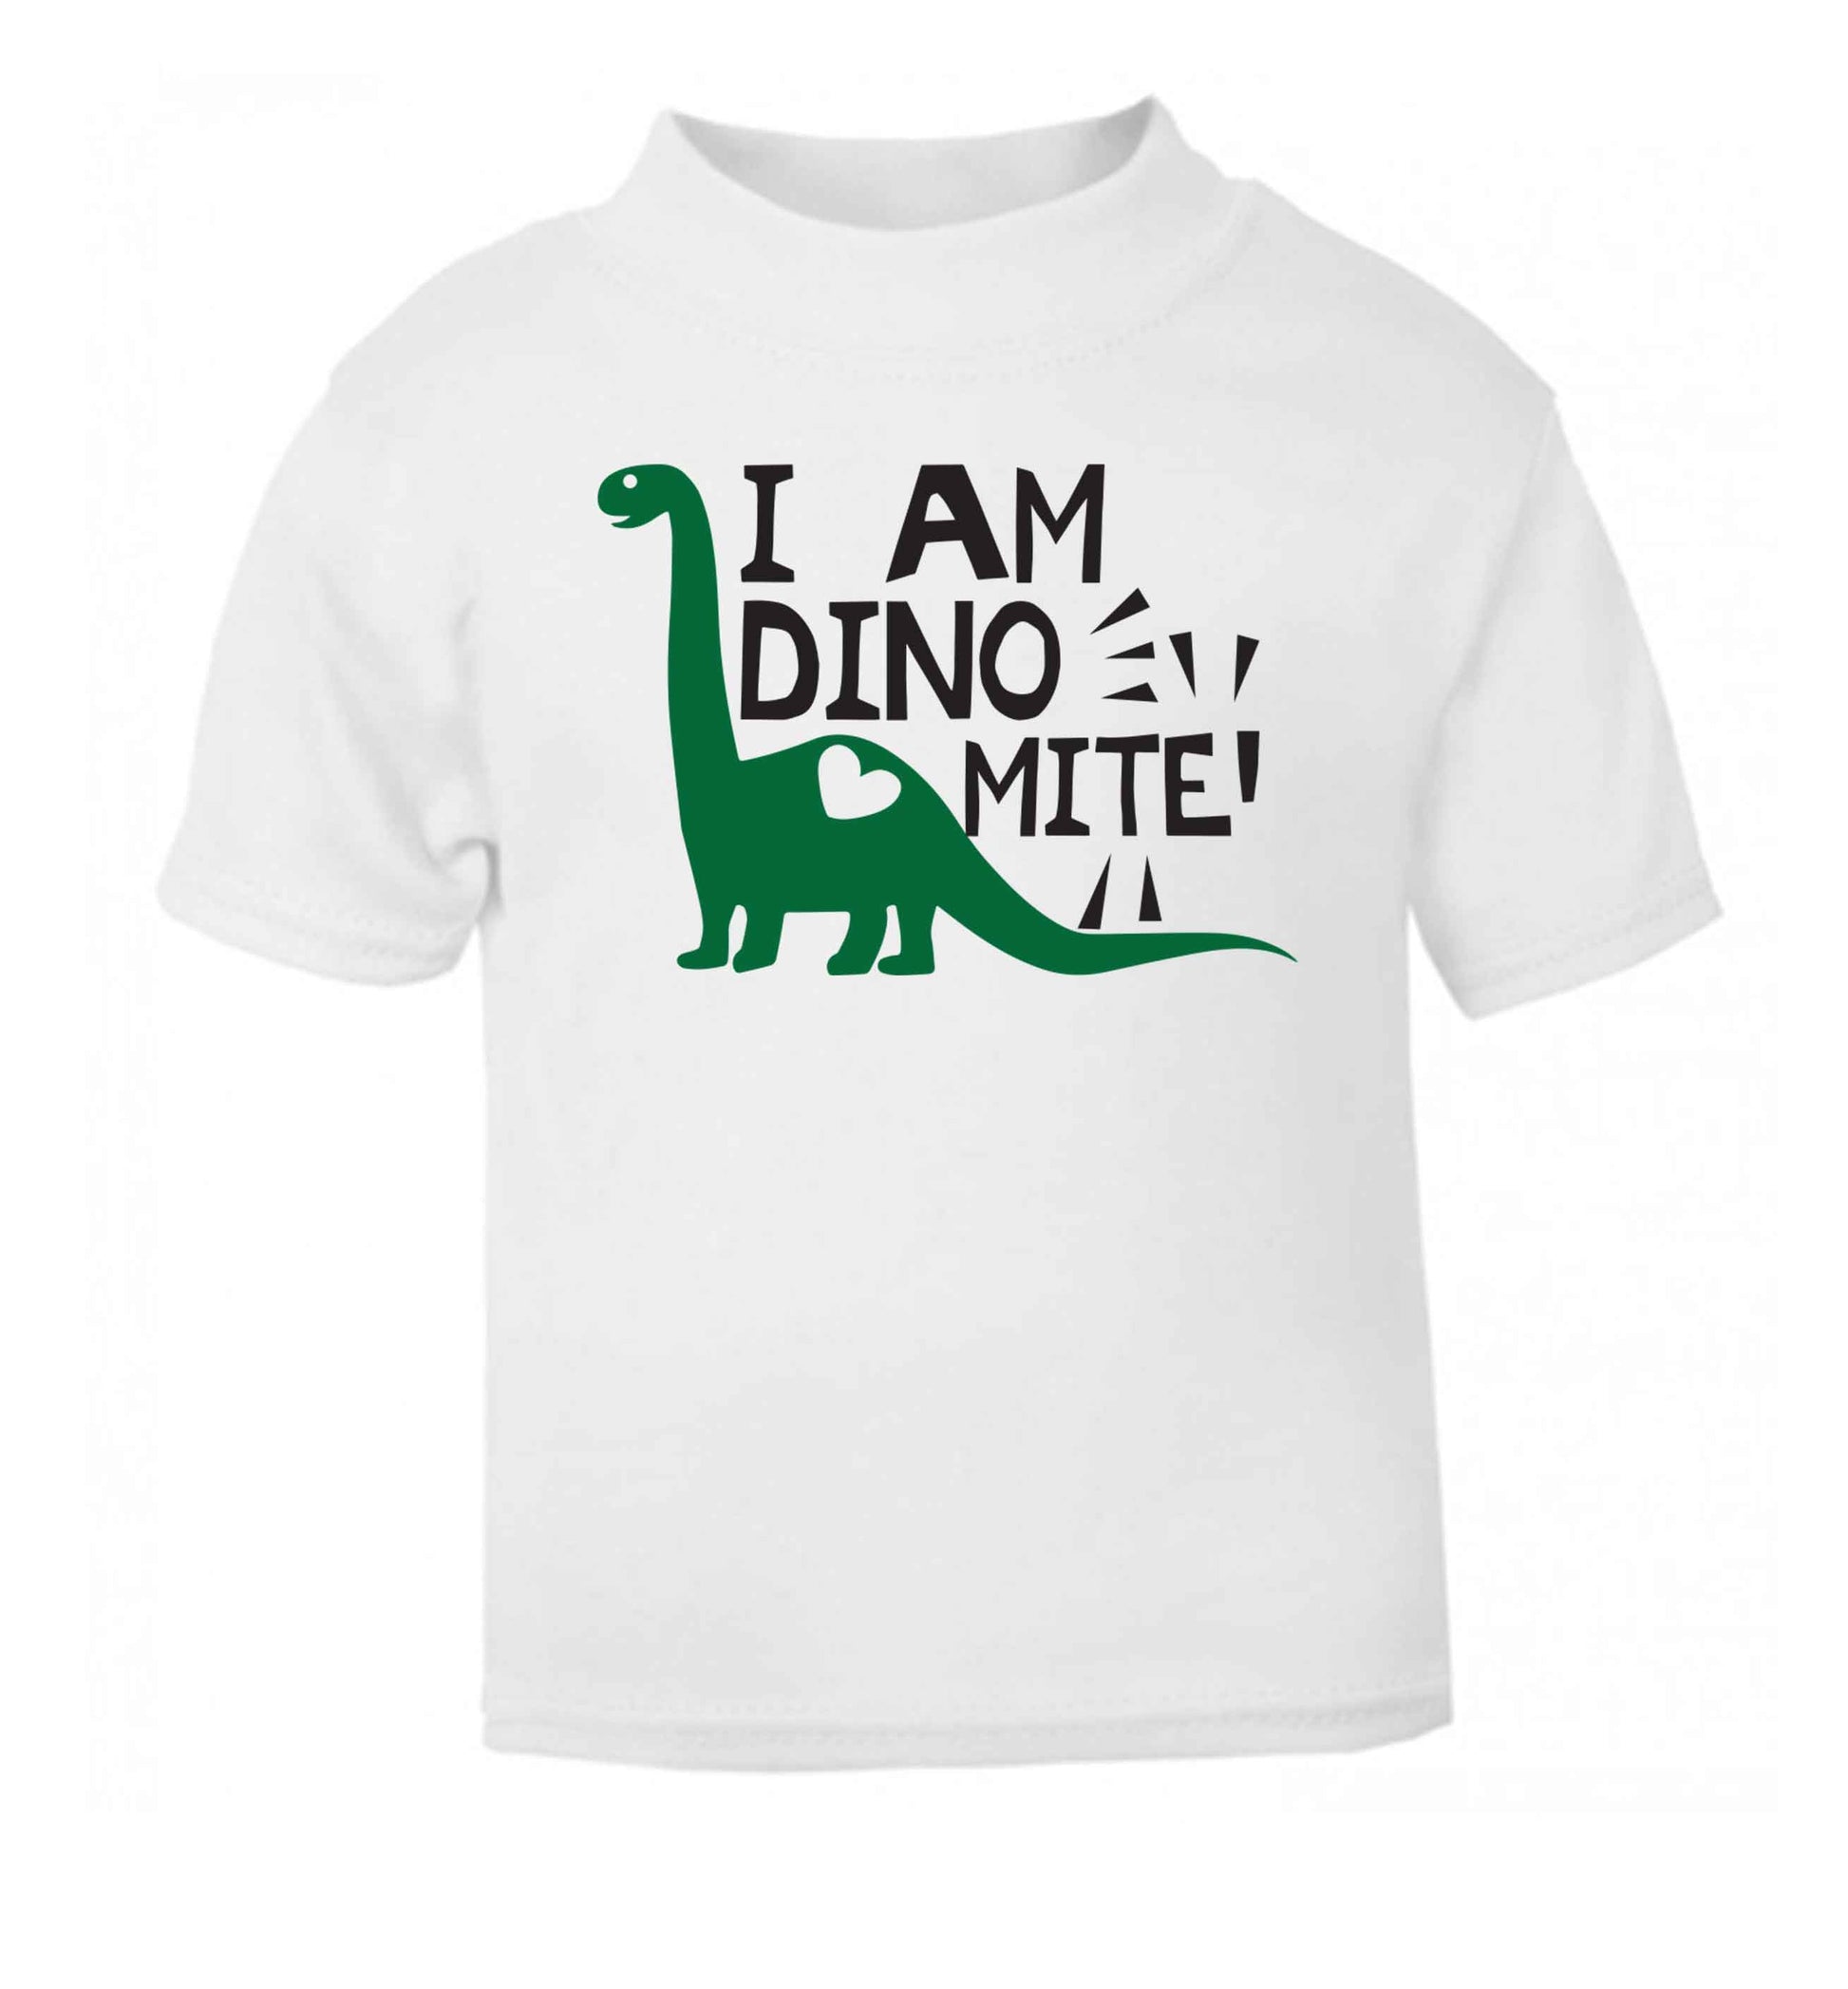 I am dinomite! white Baby Toddler Tshirt 2 Years